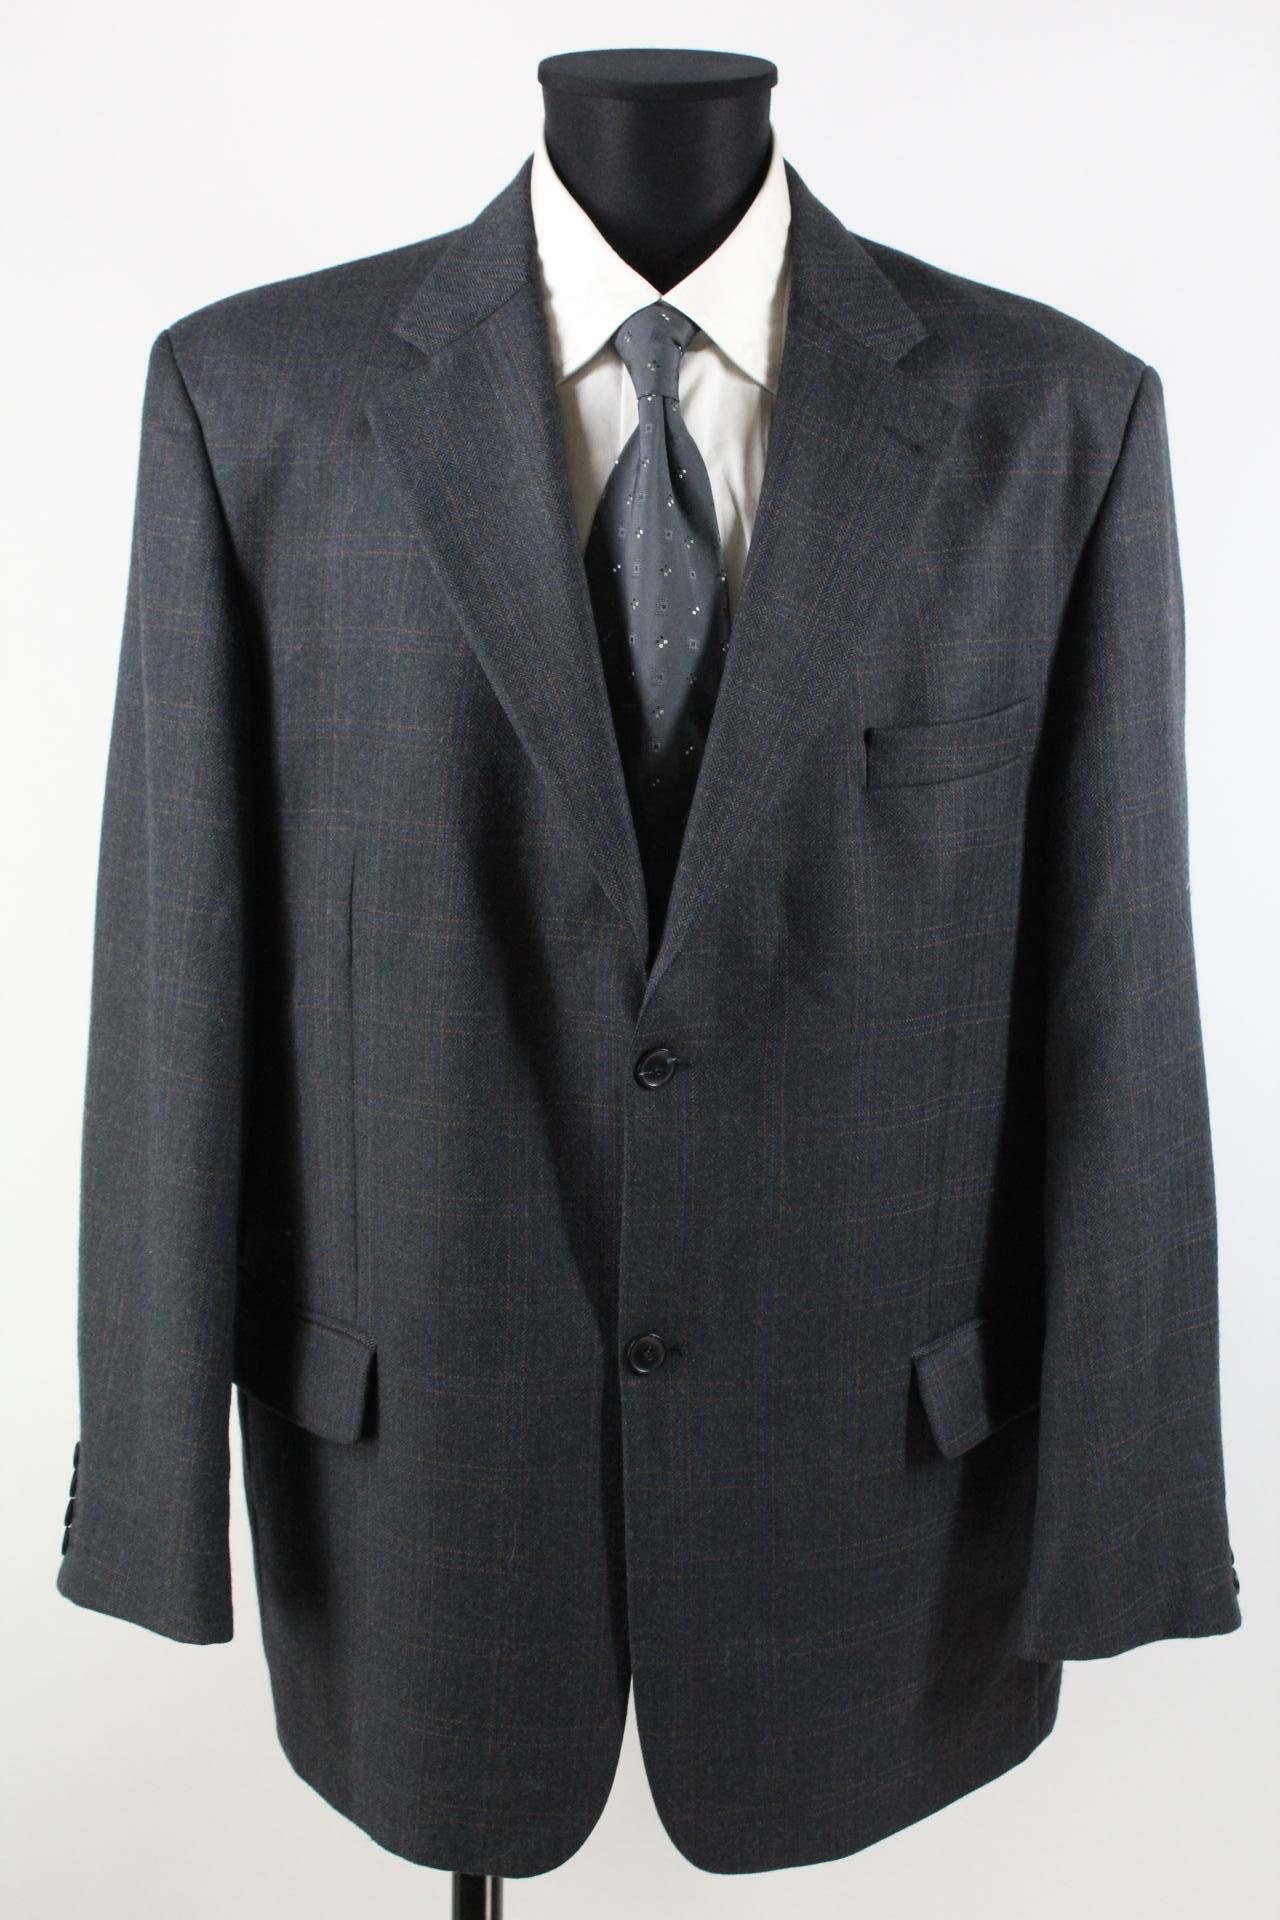 CANDA Tweed-Sakko grau, blau, braun, karos Größe 56